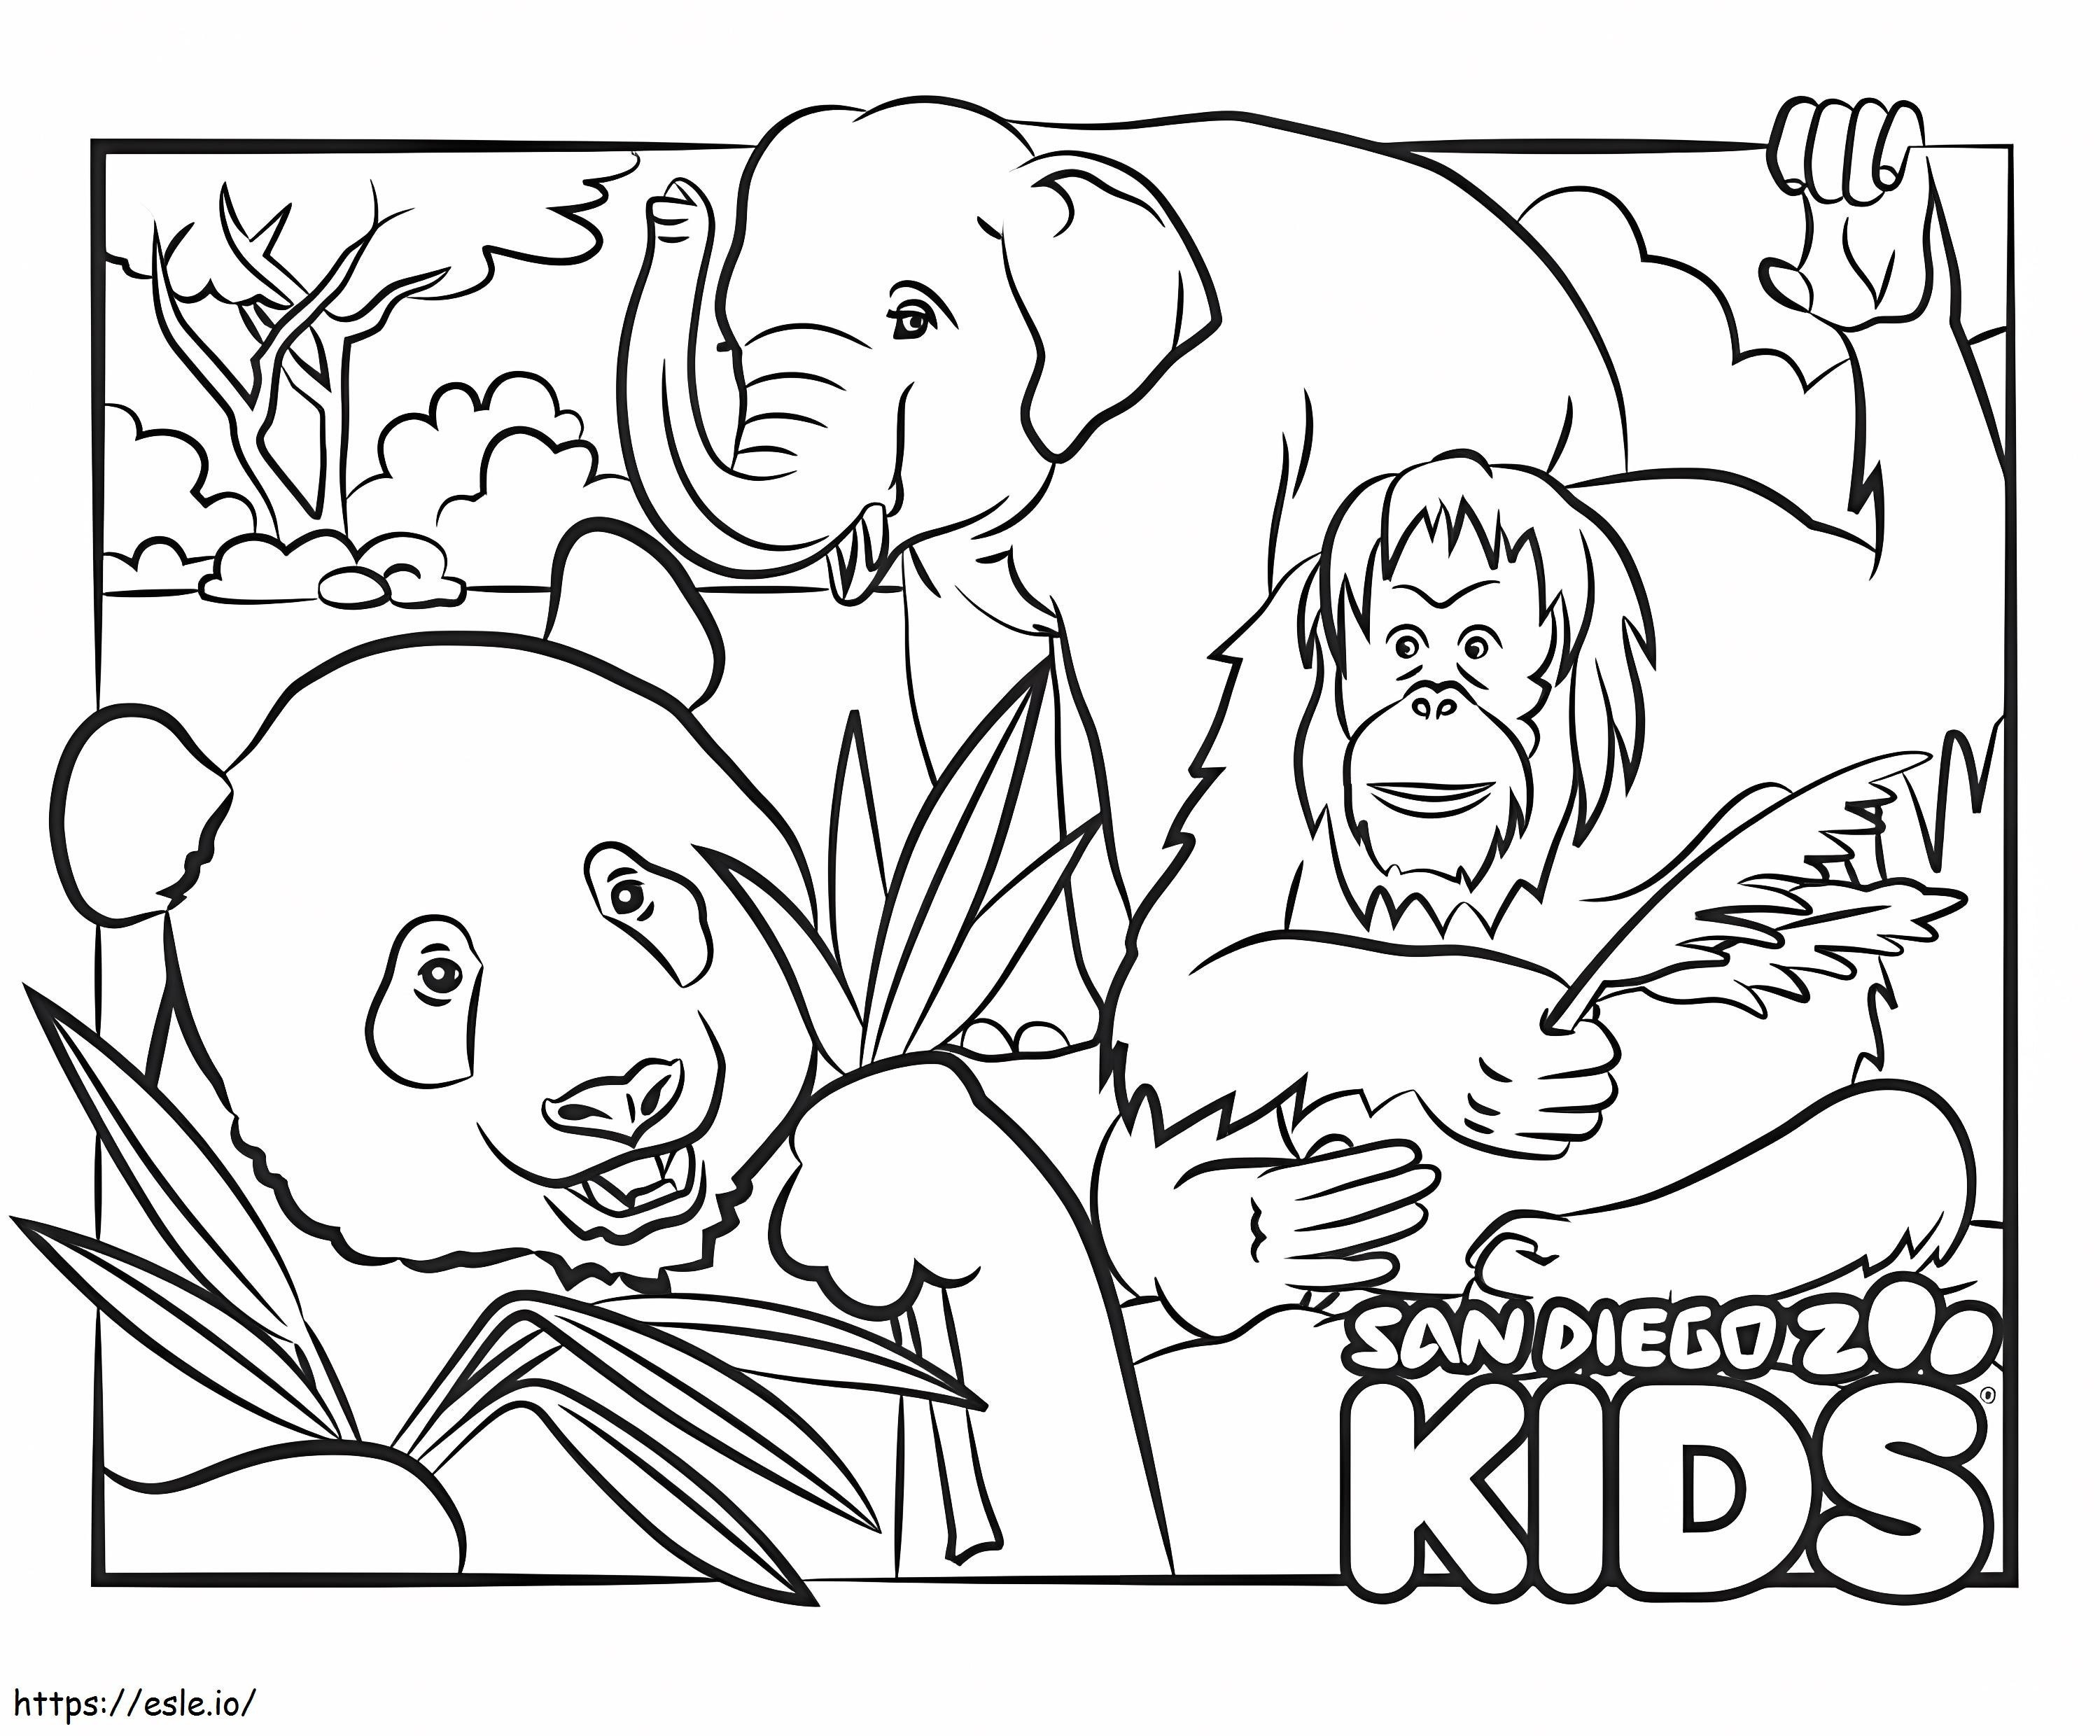 Orangután Panda y Elefante para colorear